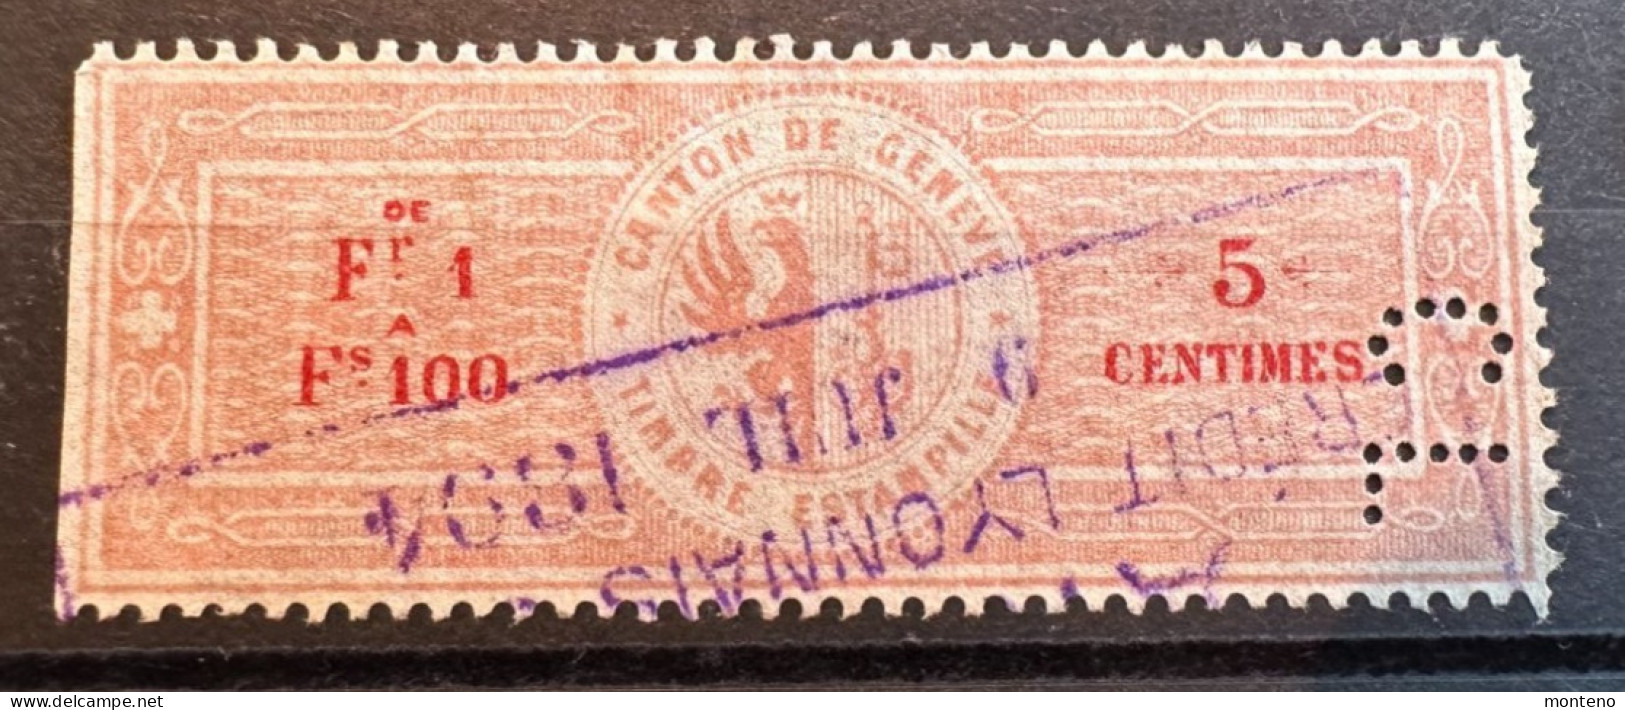 Vaud - Revenue Stamps